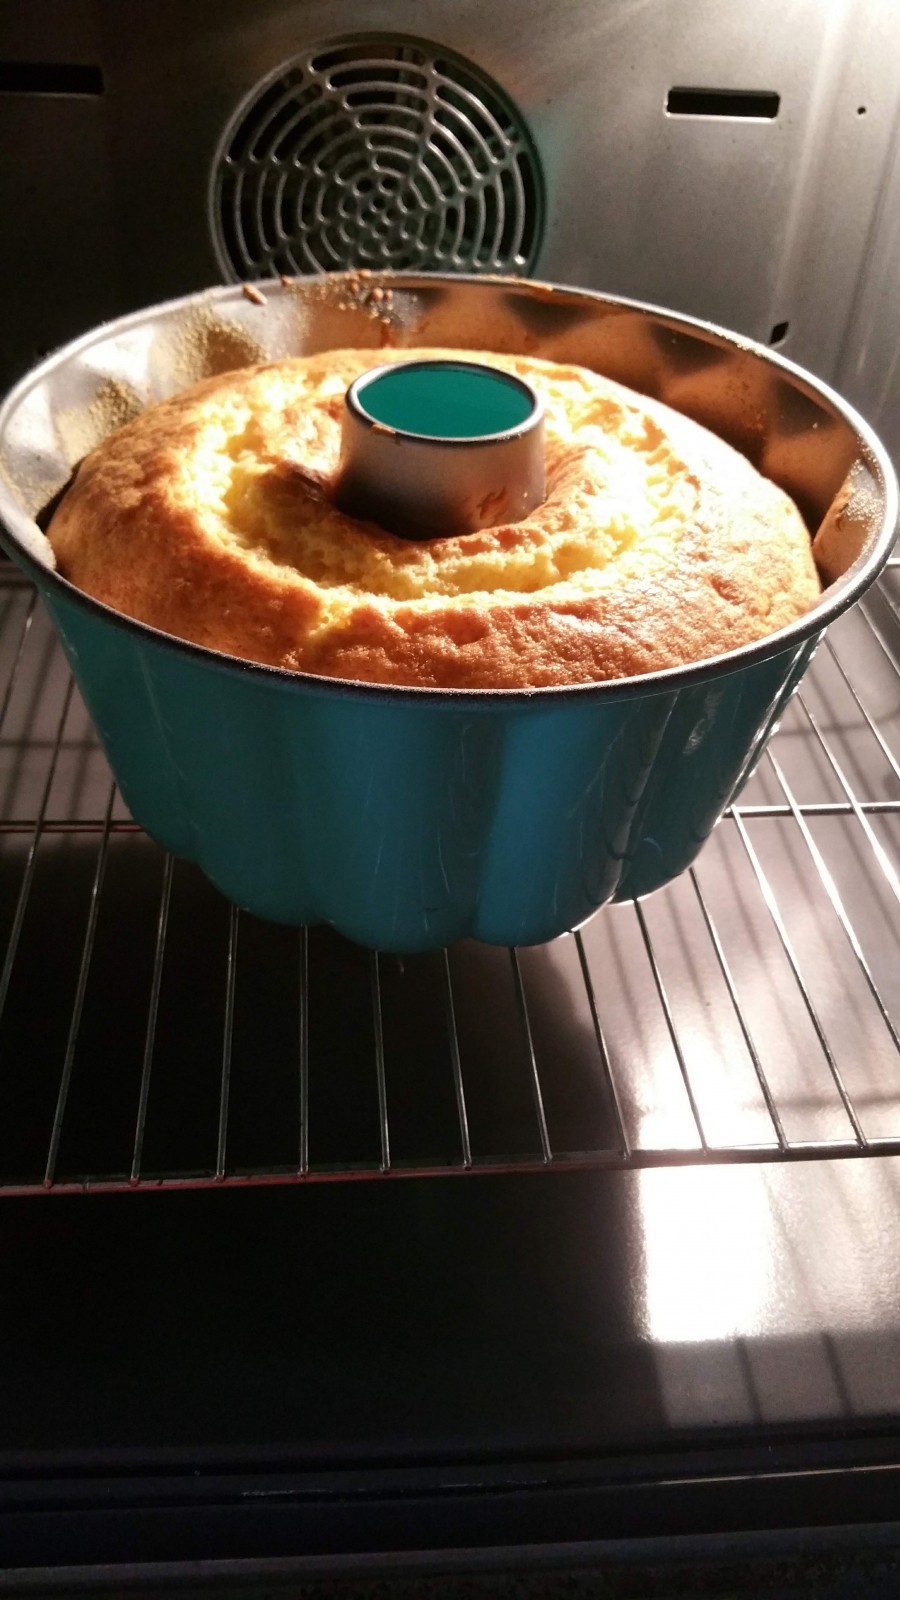 Stäbchenprobe machen, den gebackene Kuchen erst aus der Form nehmen, wenn er fast kalt ist. 